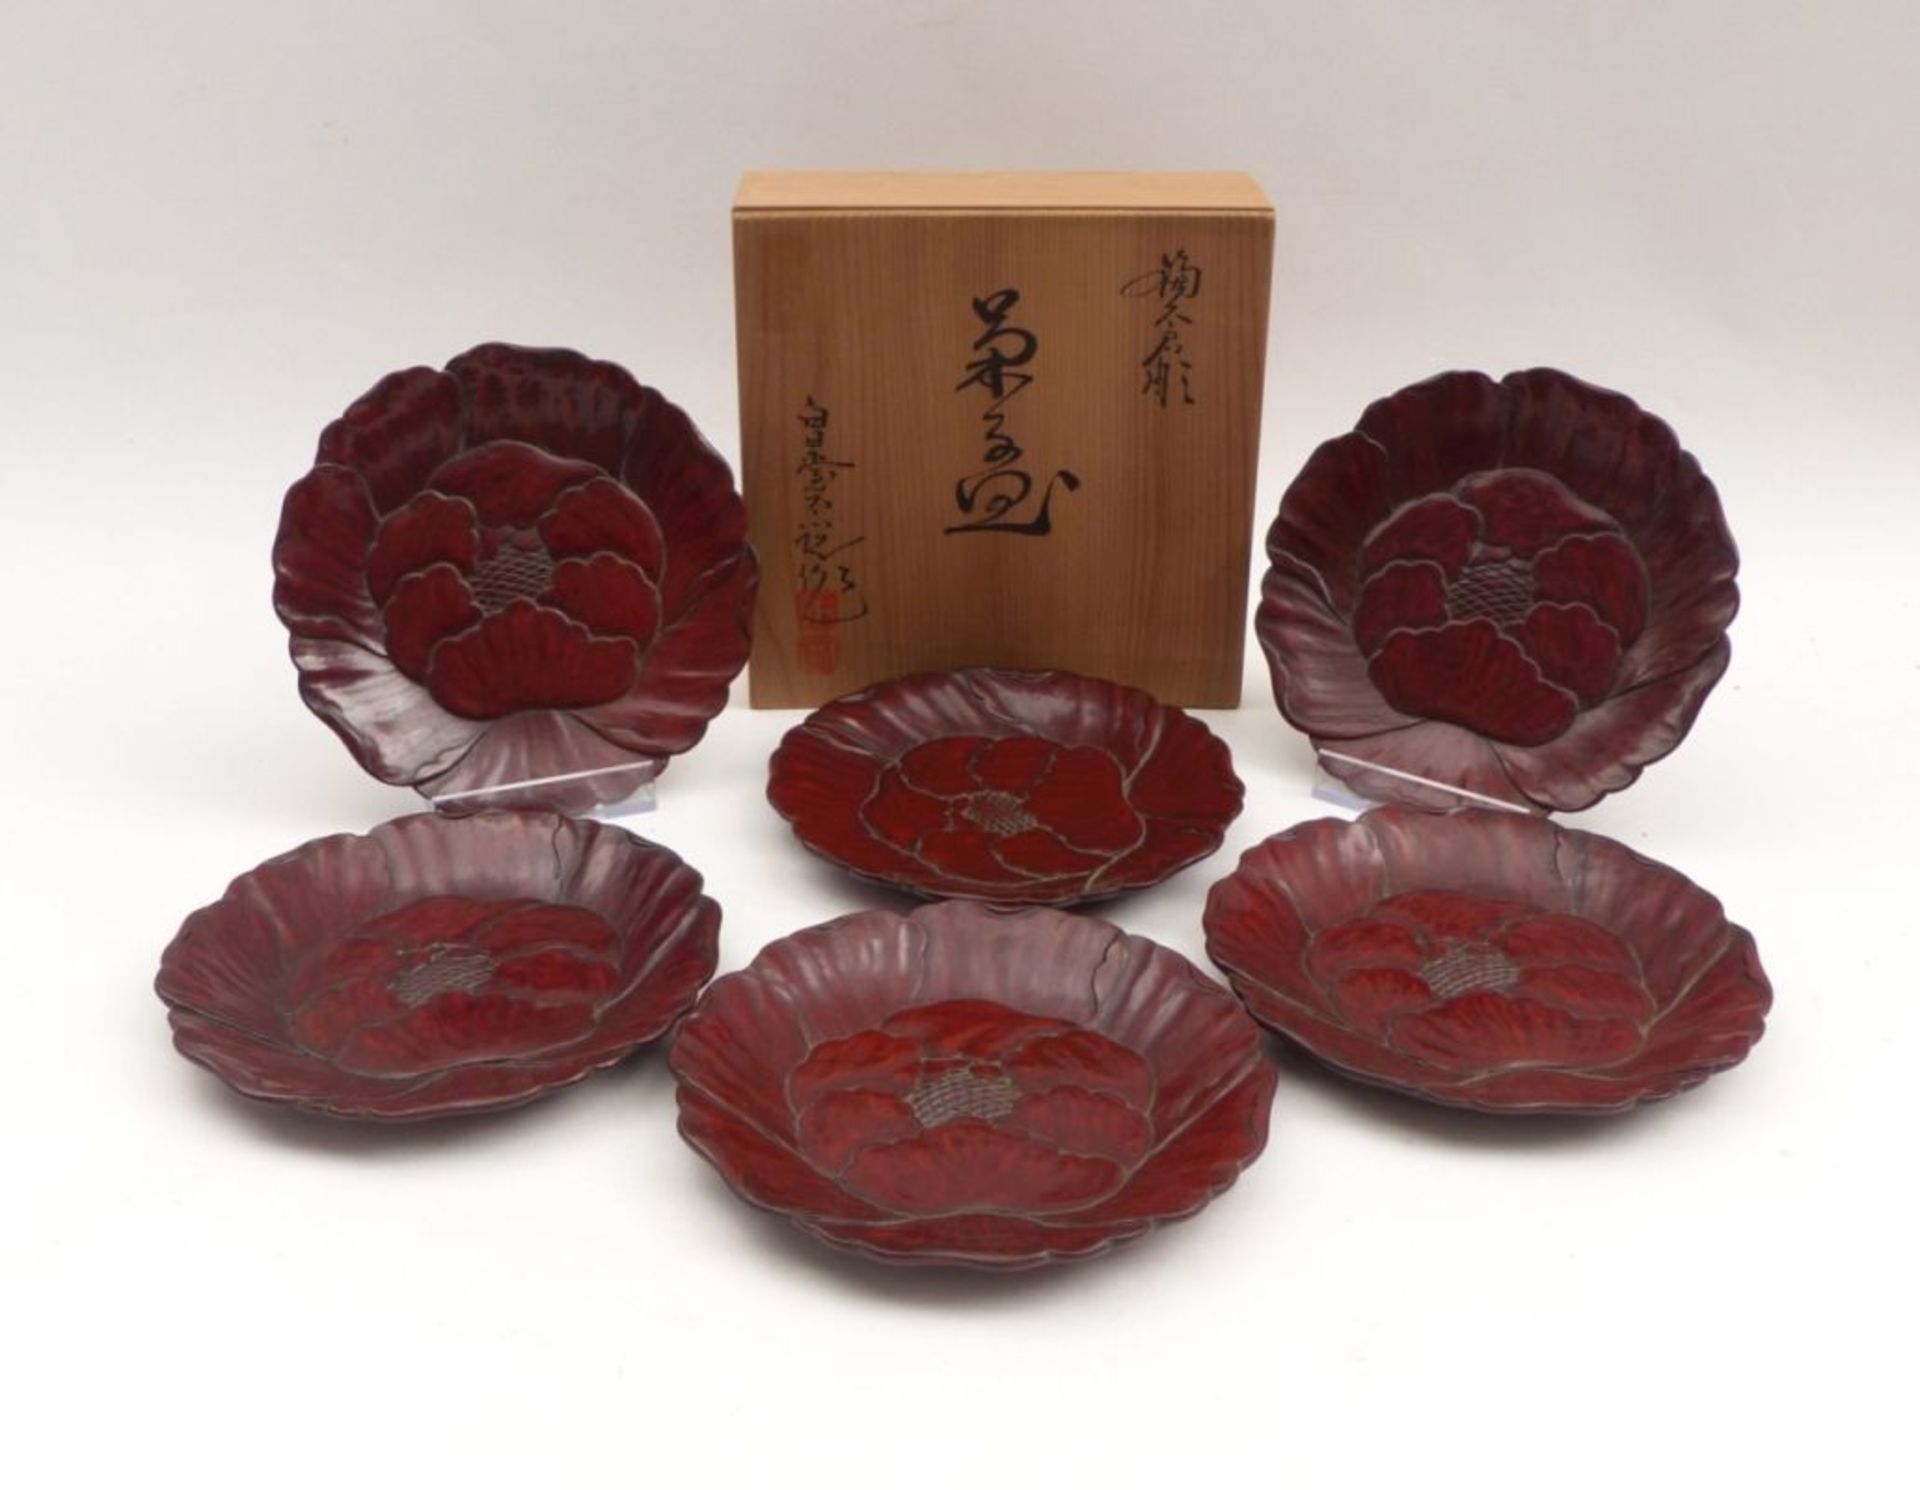 Sechs kleine Teller in BlütenformJapan, 20. Jh.Holz, oberseitig im Relief beschnitzt und rotbraun